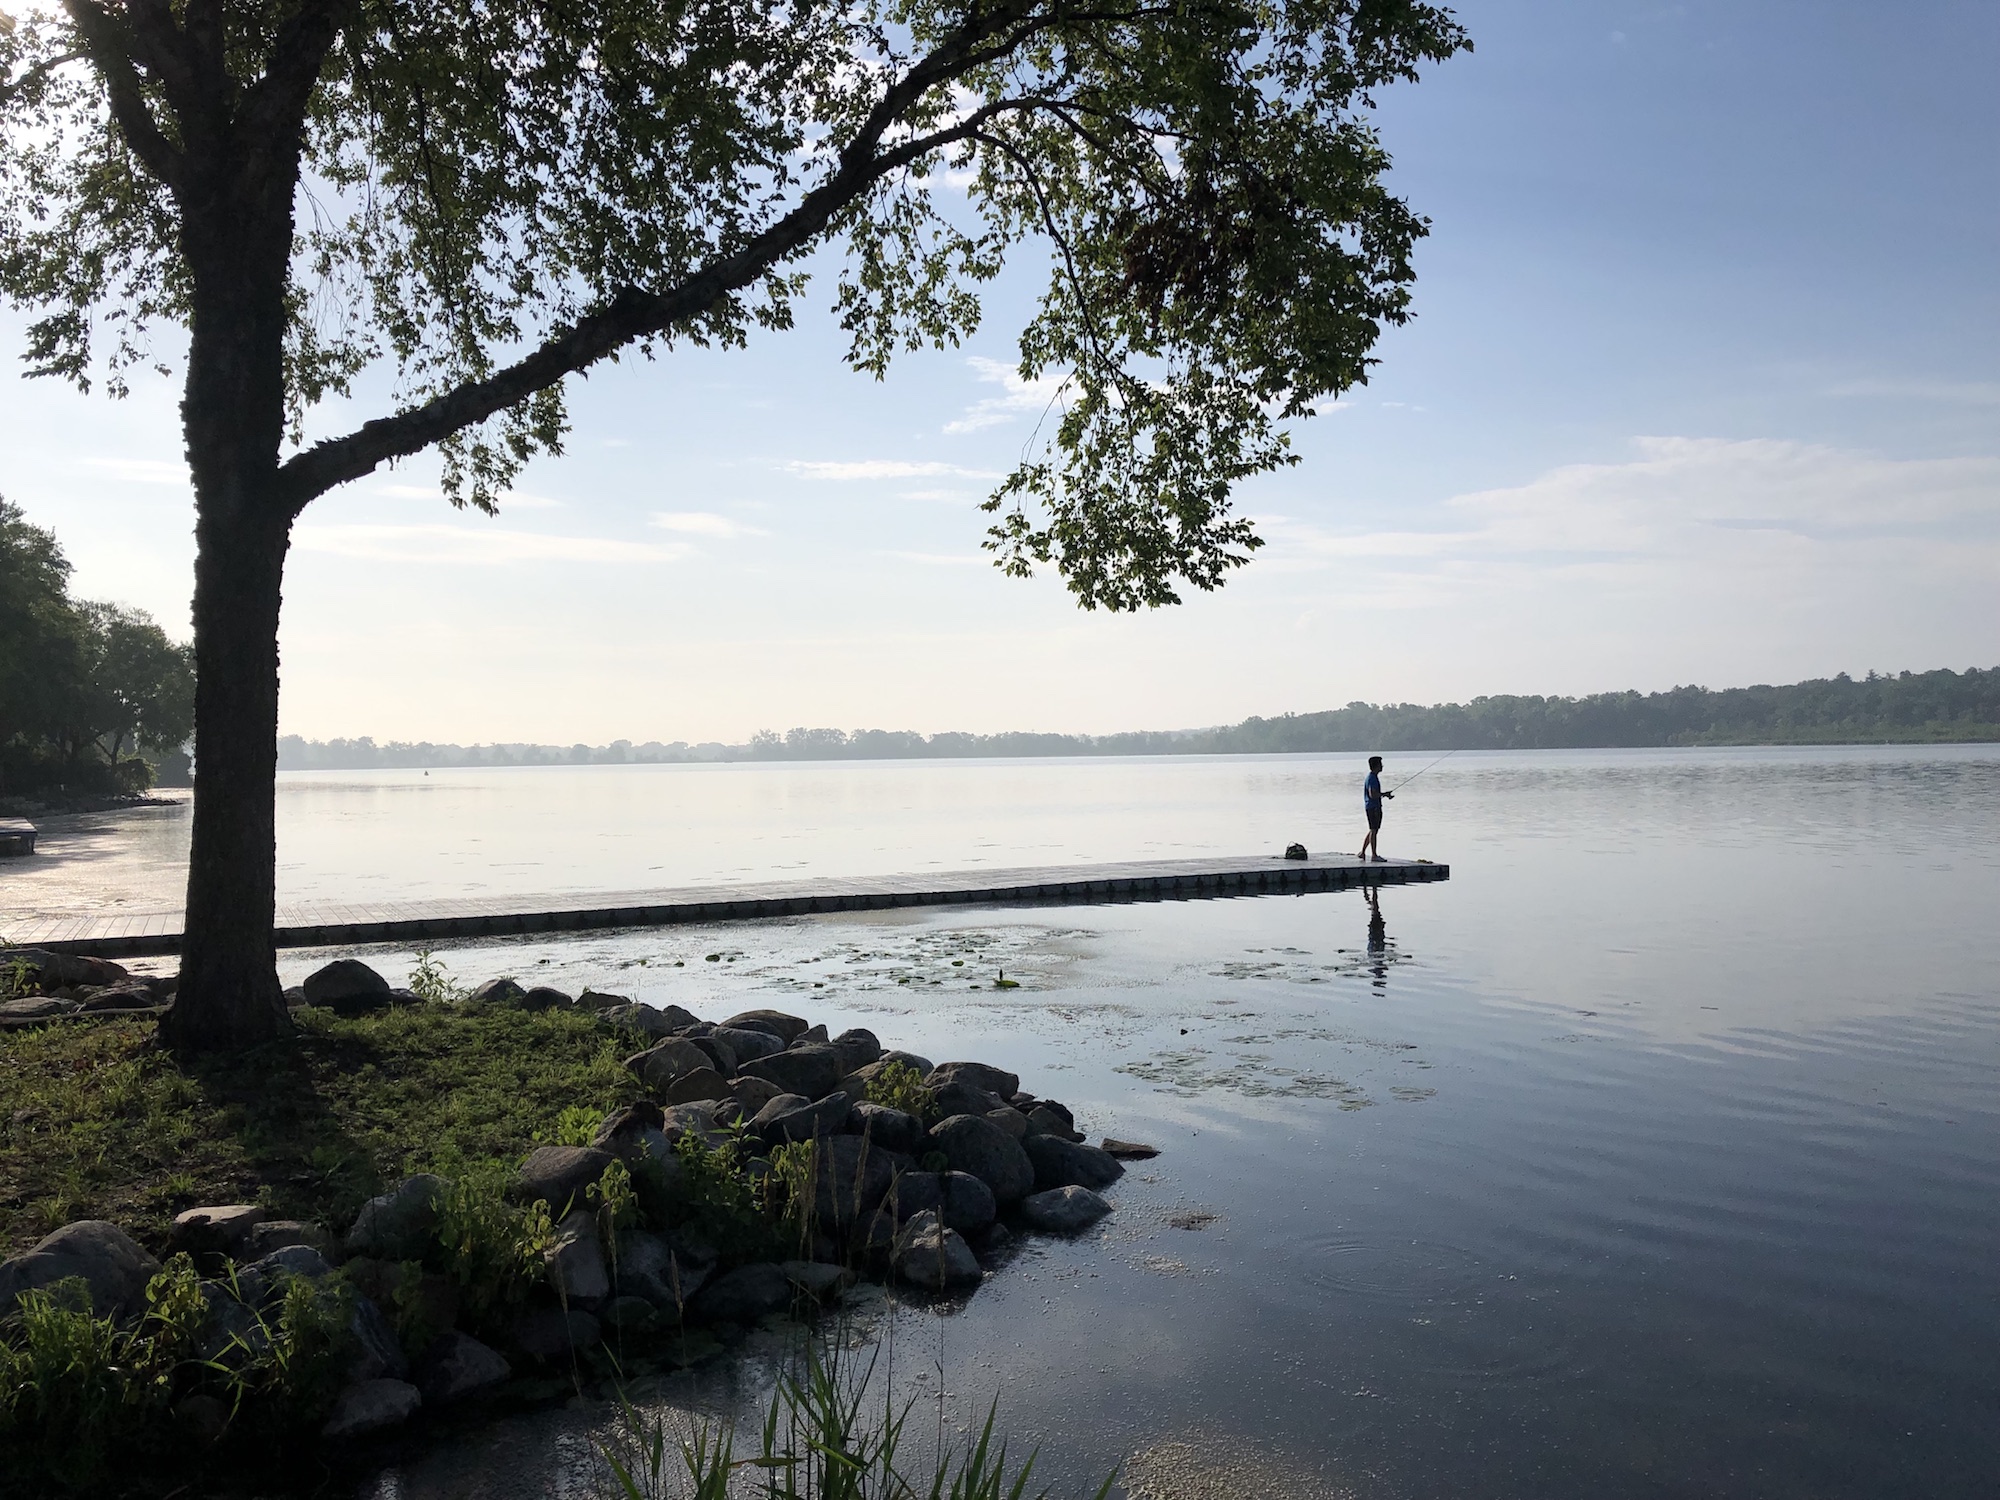 Lake Wingra on July 4, 2019.